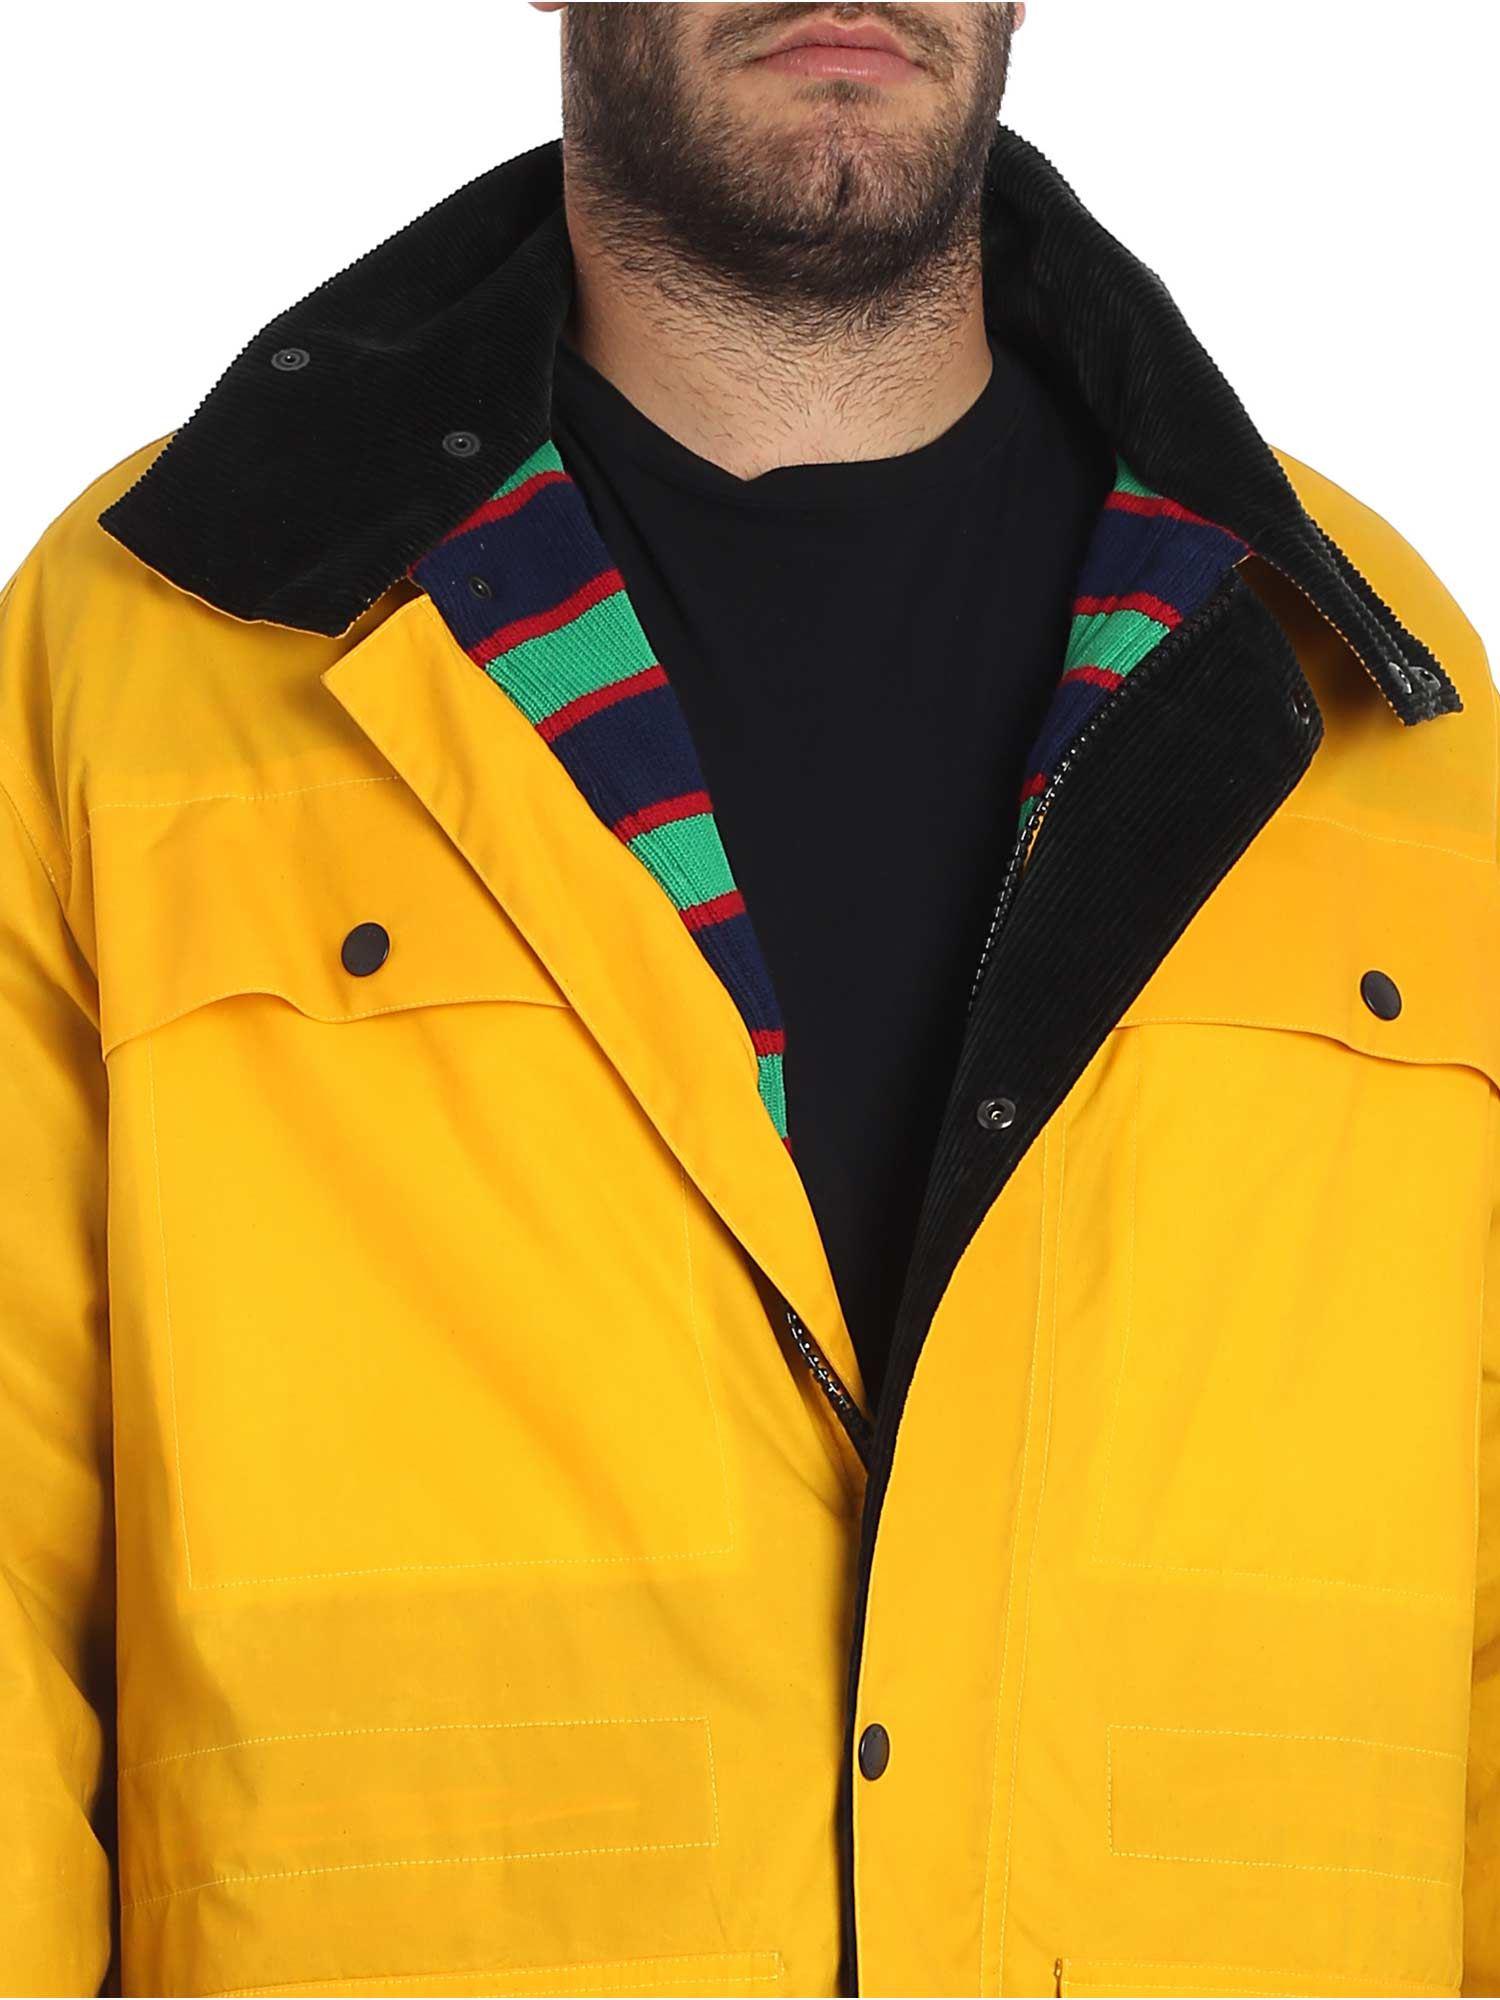 kenzo yellow coat